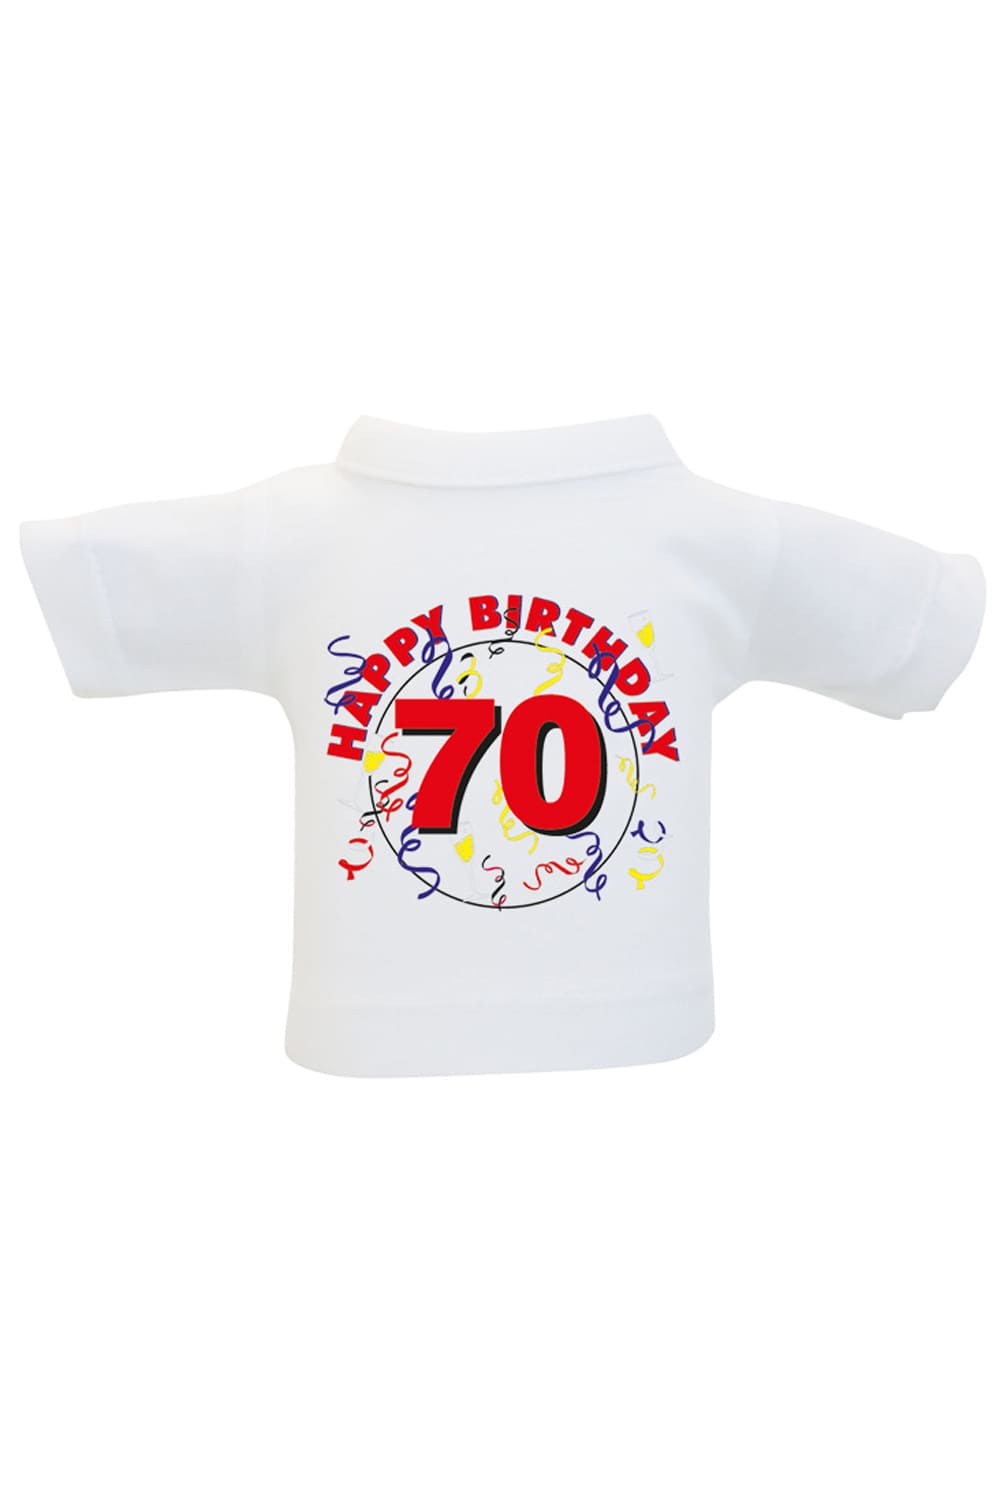 Das Mini T-Shirt ist ein lustiges Accessoire fuer Plueschtiere, Geschenke und Flaschen. Einfach das Mini Shirt einer Weinflasche oder einem Teddy anziehen und fertig ist die originelle Geschenkverpackung. Kleines Spruchshirt mit der Aufschrift: Happy Birthday 70.